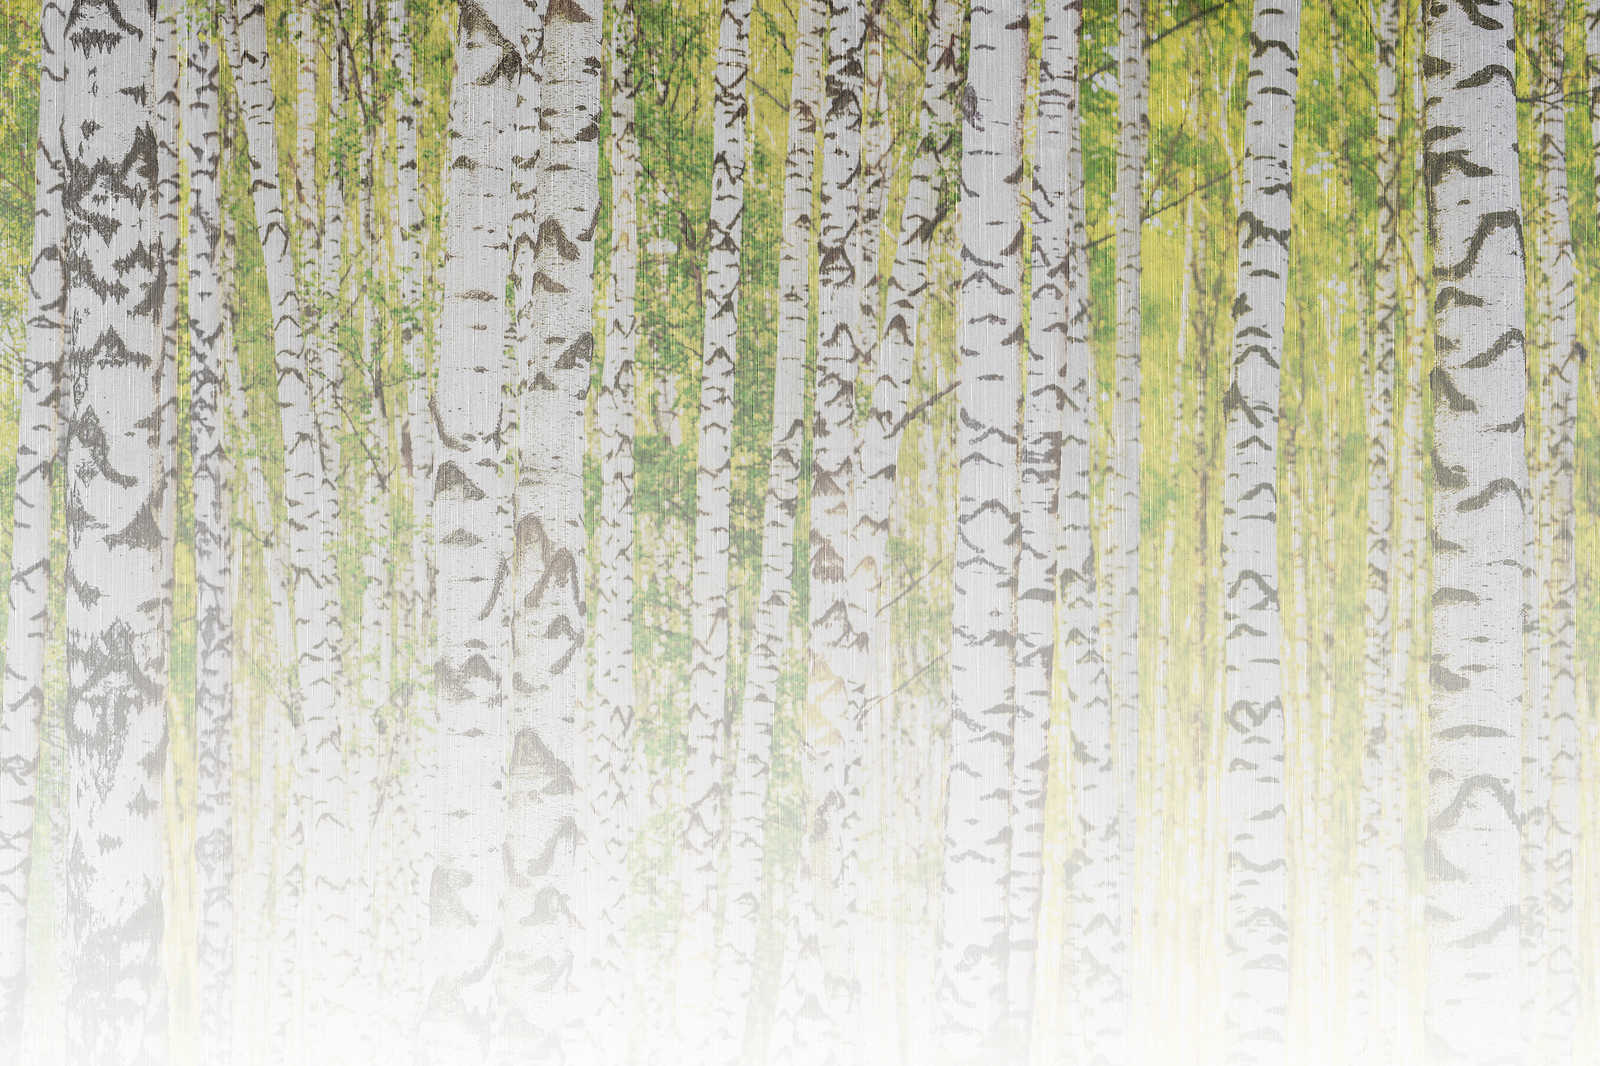             Quadro su tela con foresta di betulle in struttura di lino - 0,90 m x 0,60 m
        